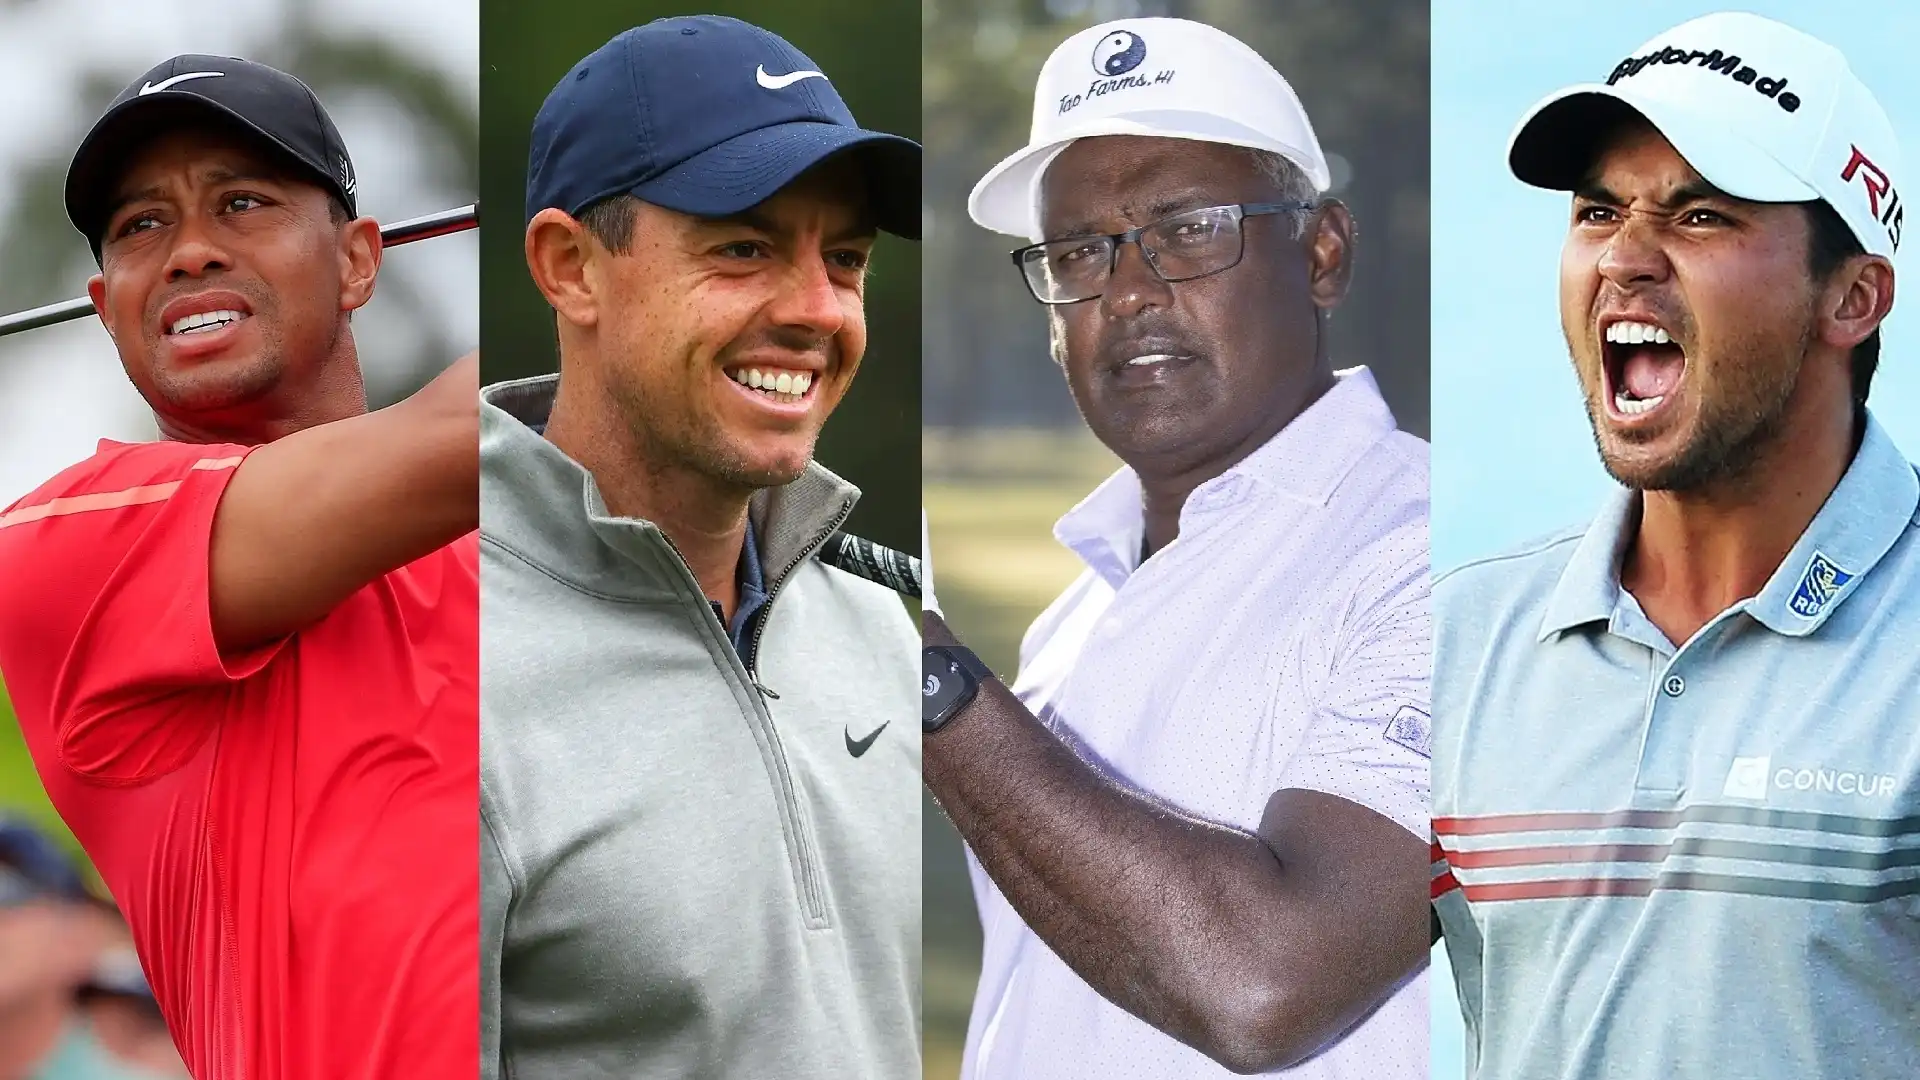 La classifica dei golfisti che hanno guadagnato più premi in denaro nel corso delle loro carriere. Fonte: PGA Tour